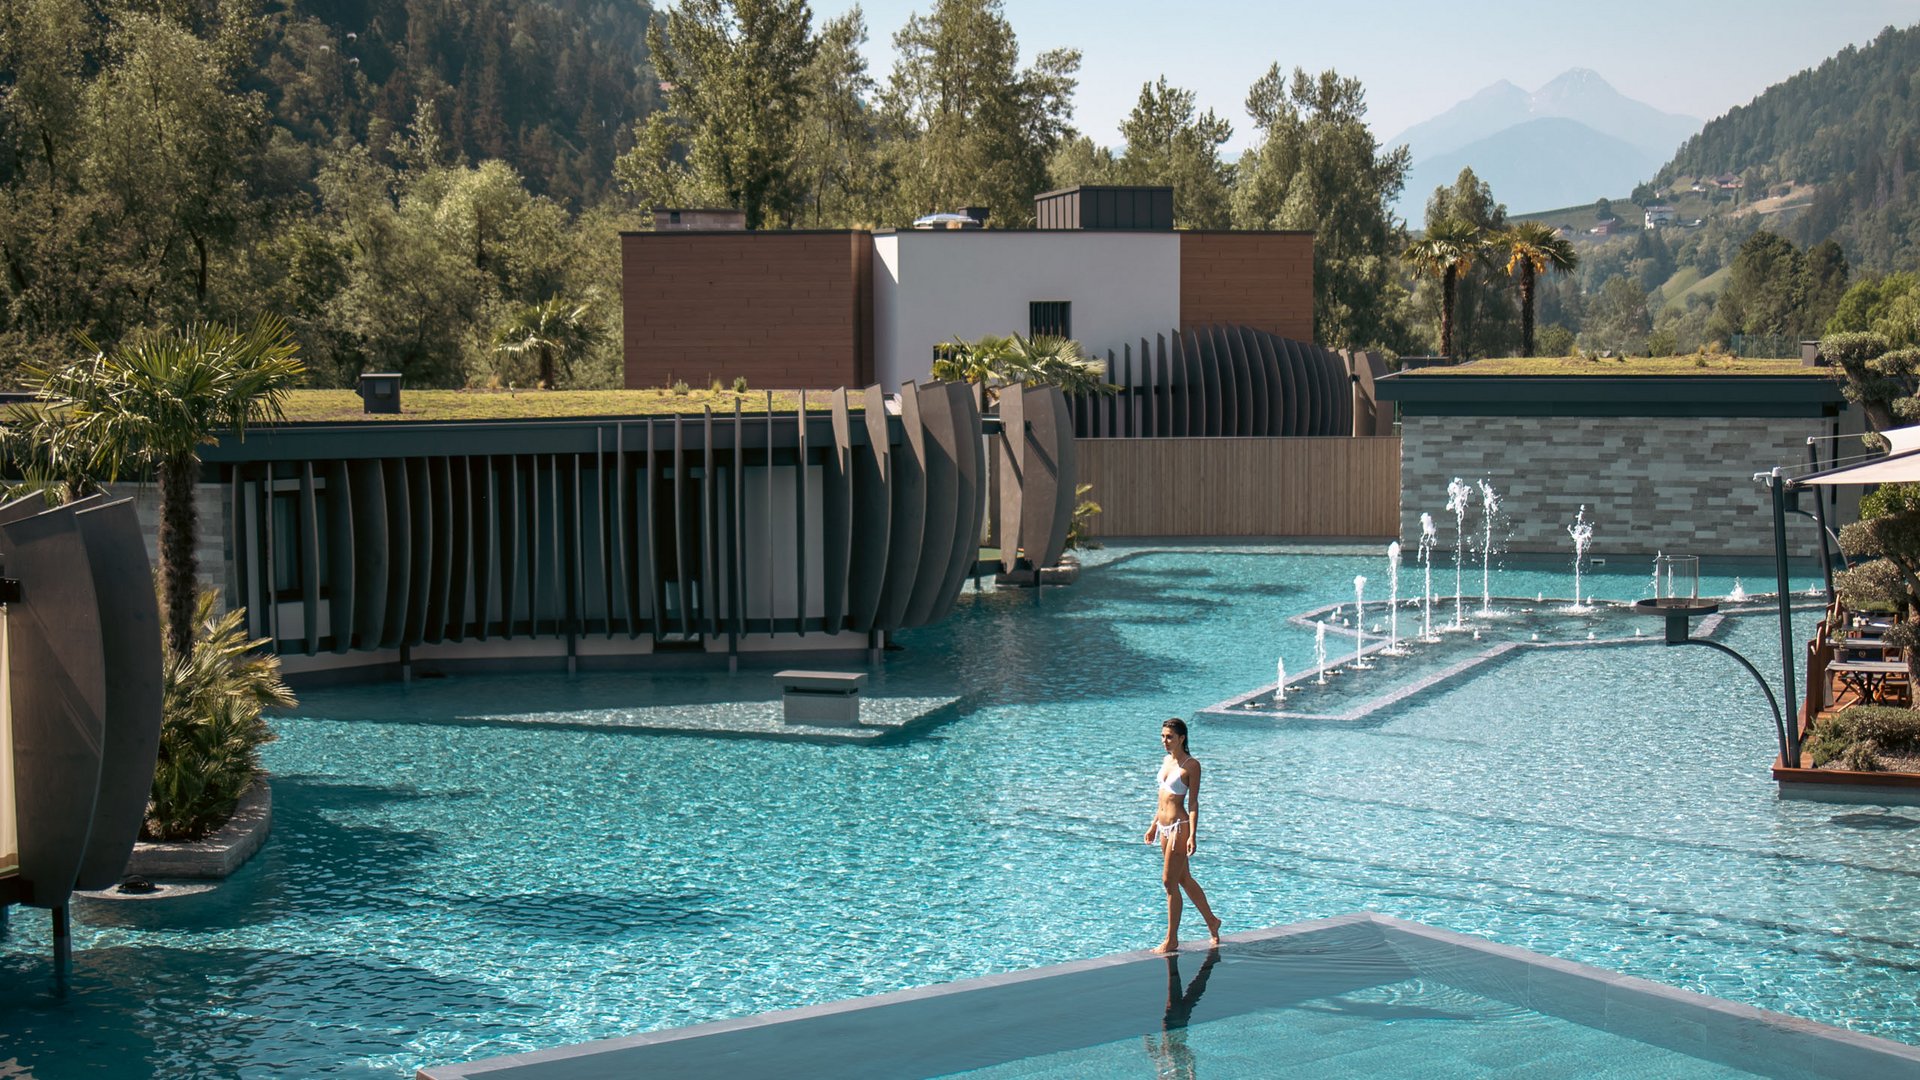 Ihr 5-Sterne-Hotel in Südtirol mit jeglichem Luxus